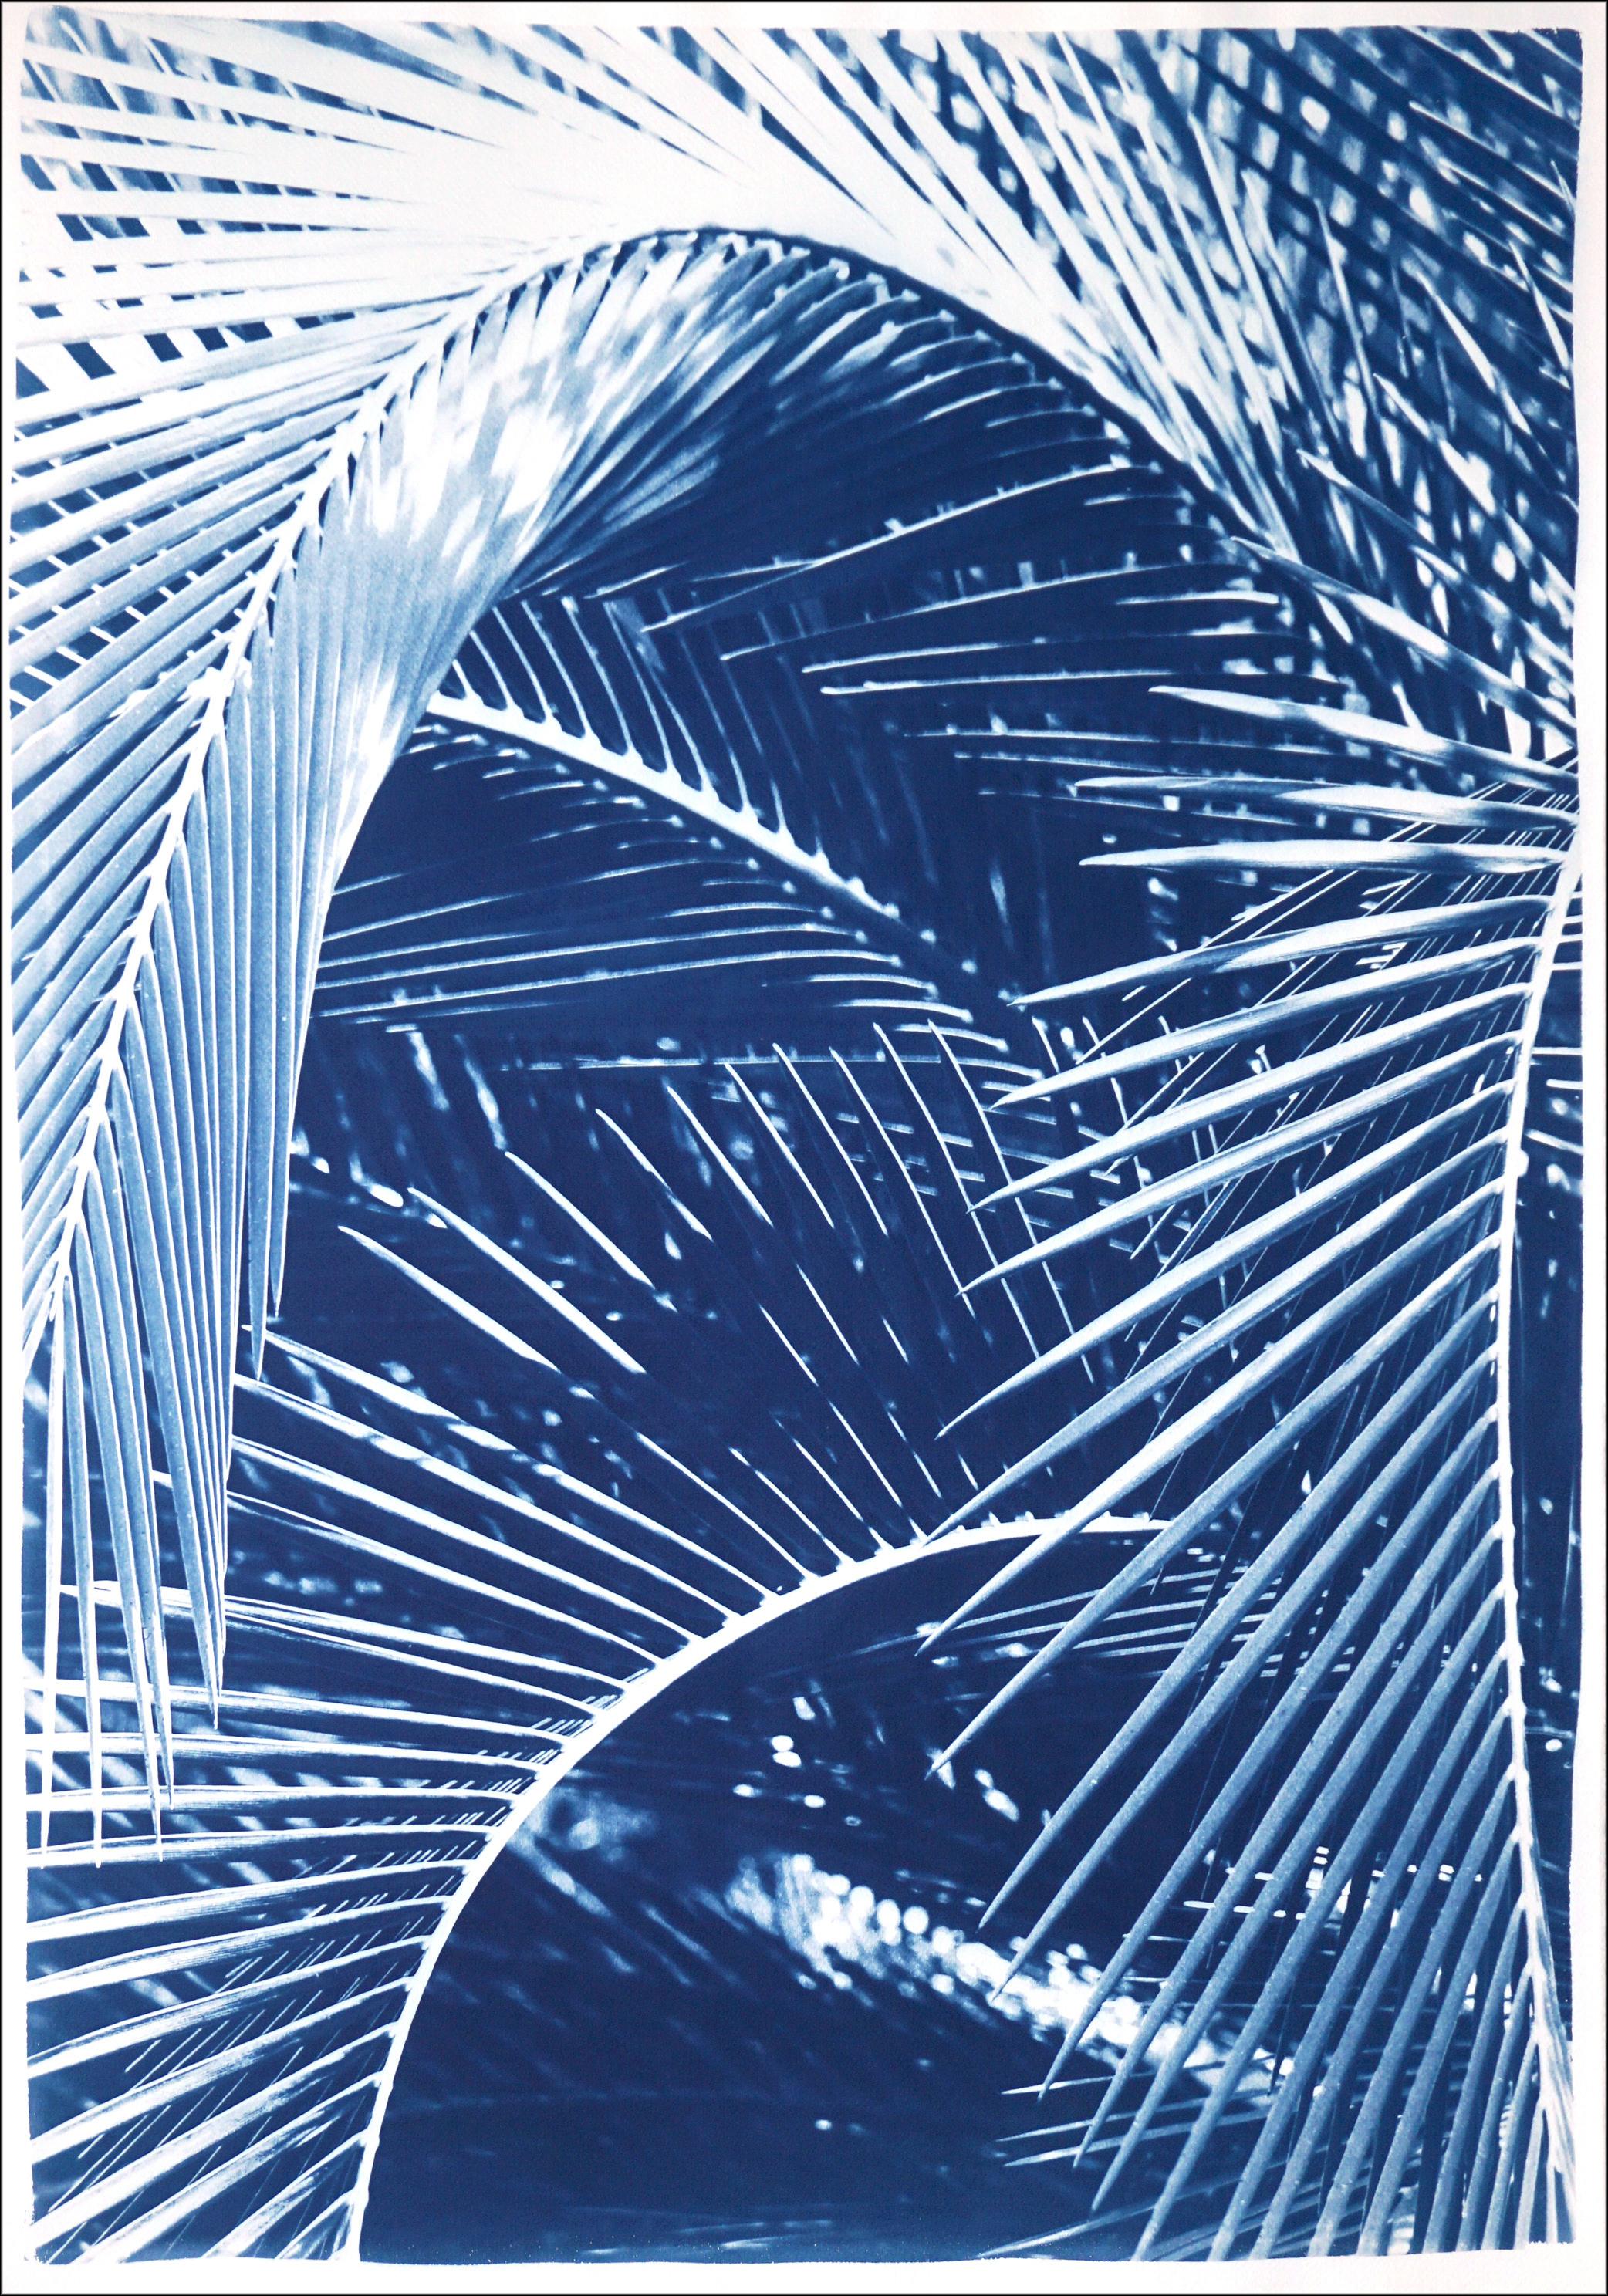 Feuilles de palmier de jardin botaniques, impression de natures mortes tropicales faites à la main dans les tons bleus